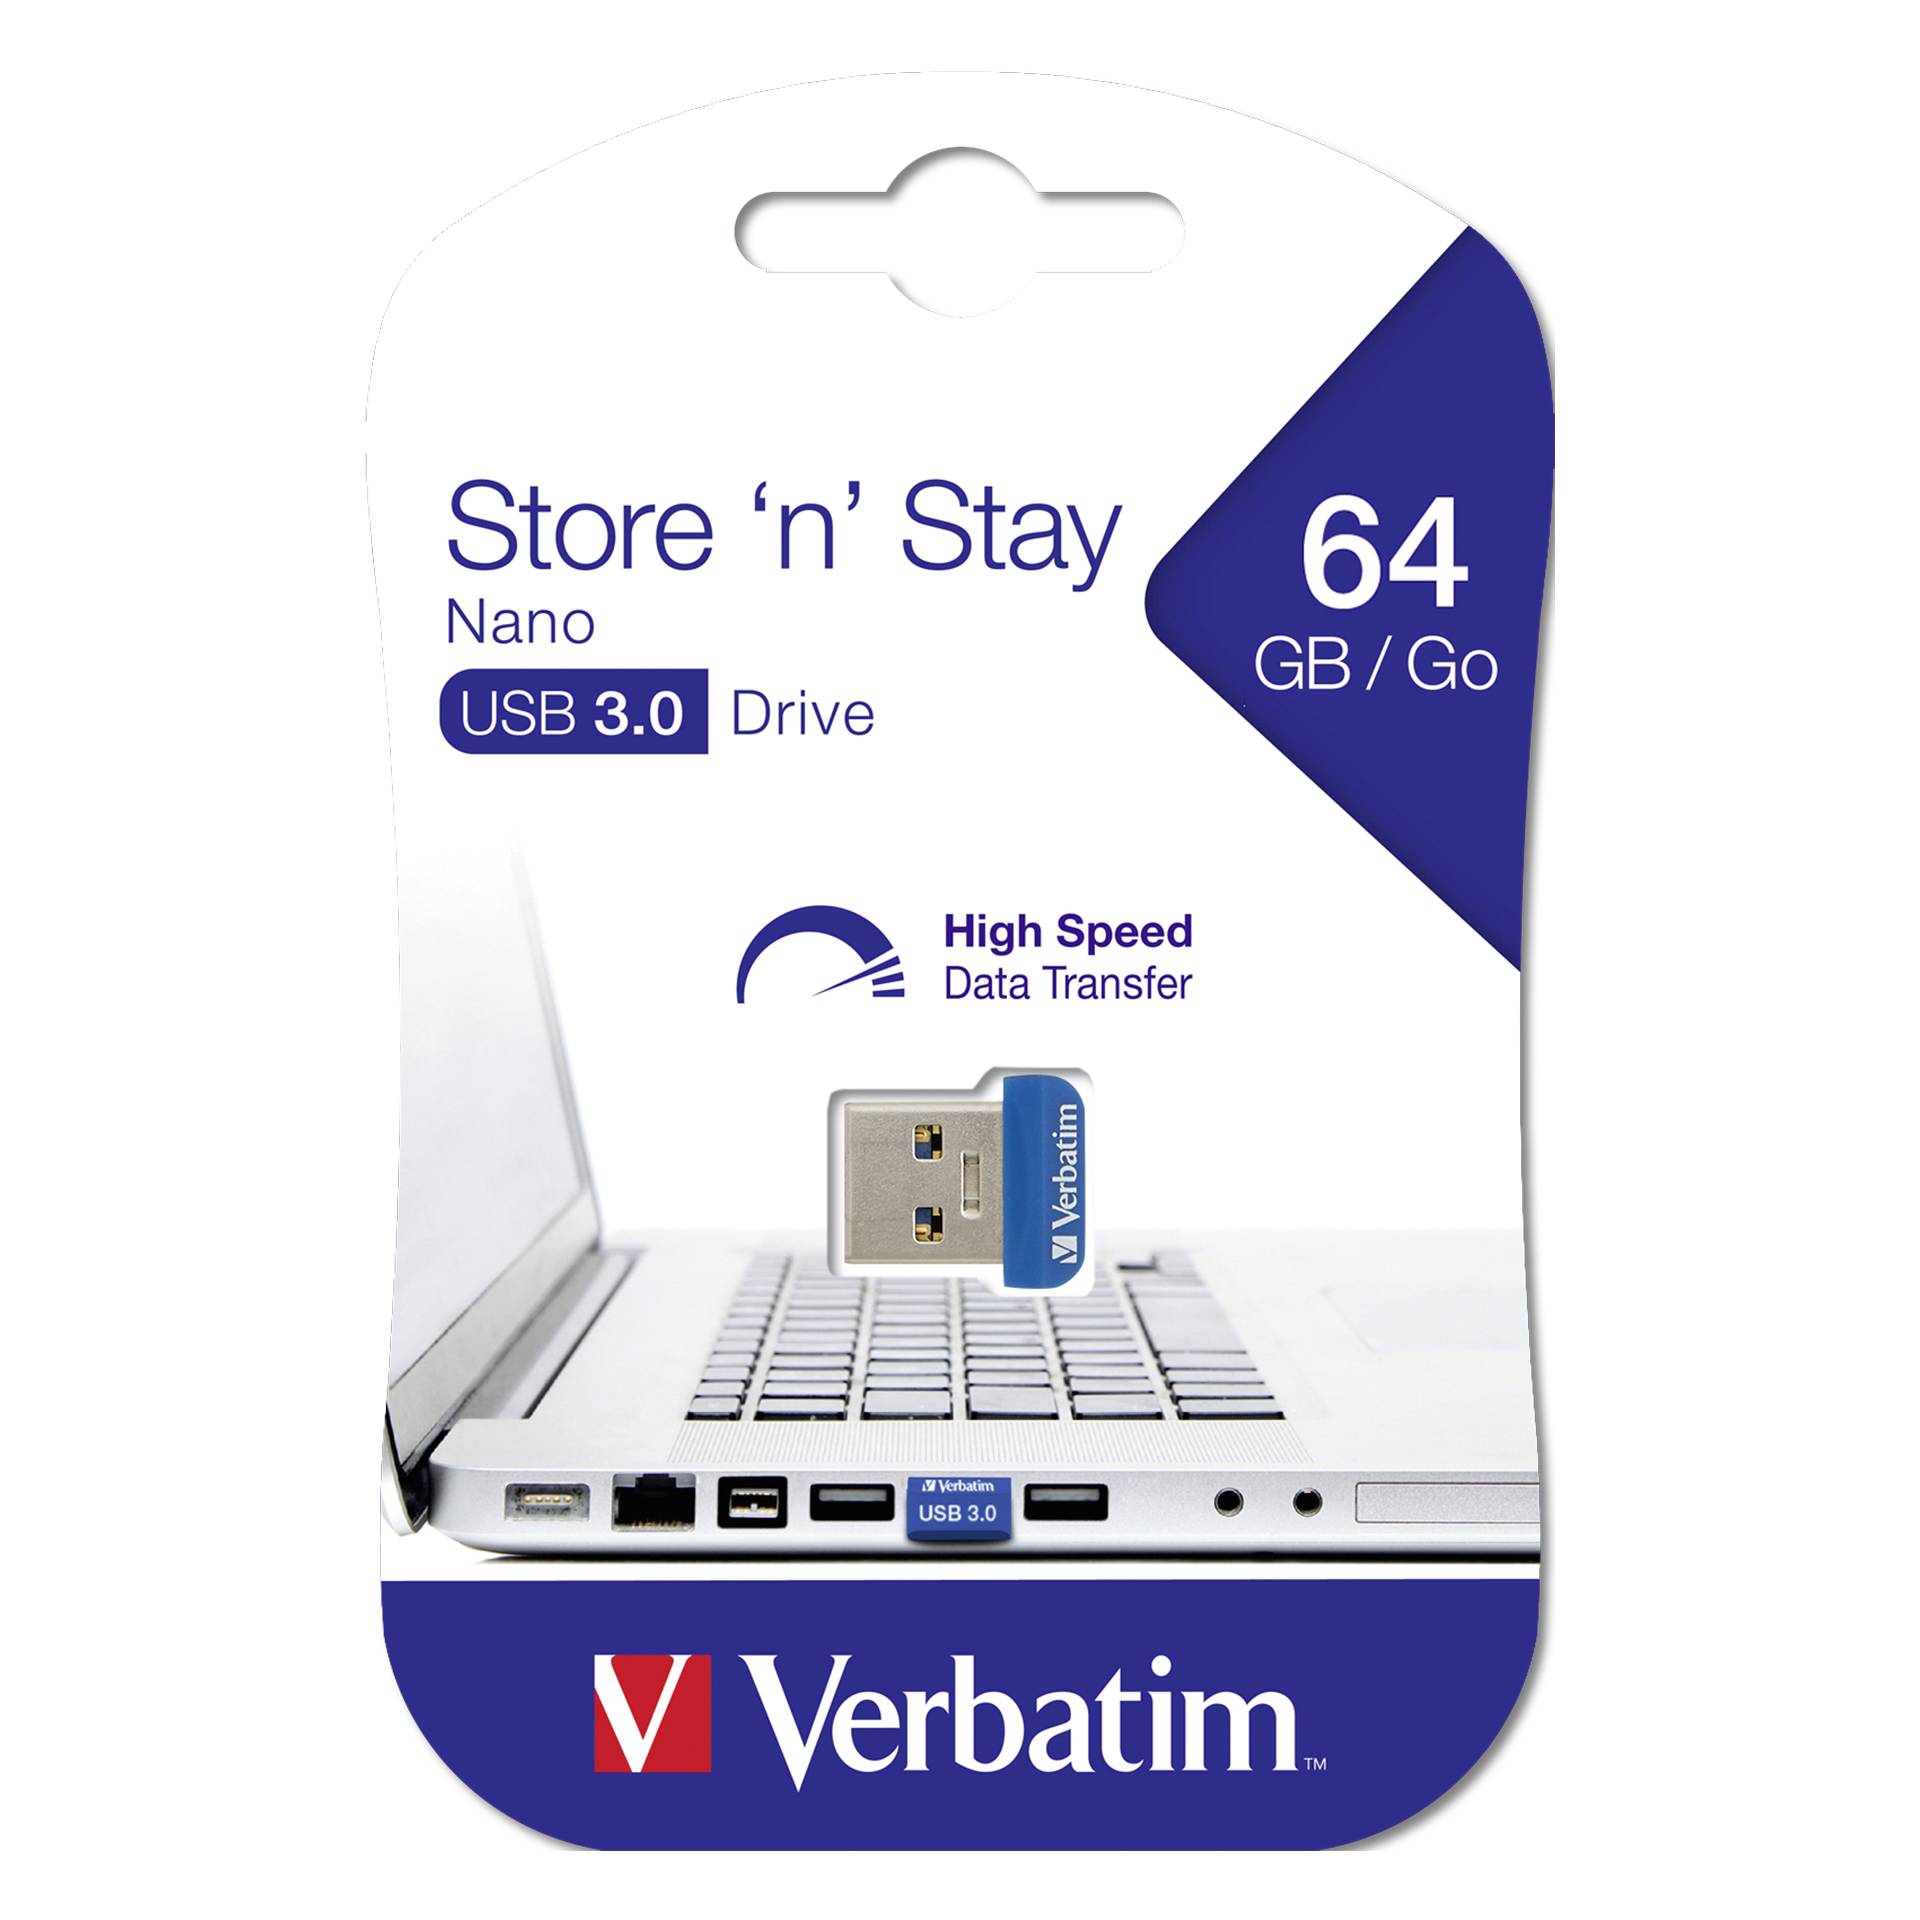 Verbatim Store n Stay Nano  64GB USB 3.0